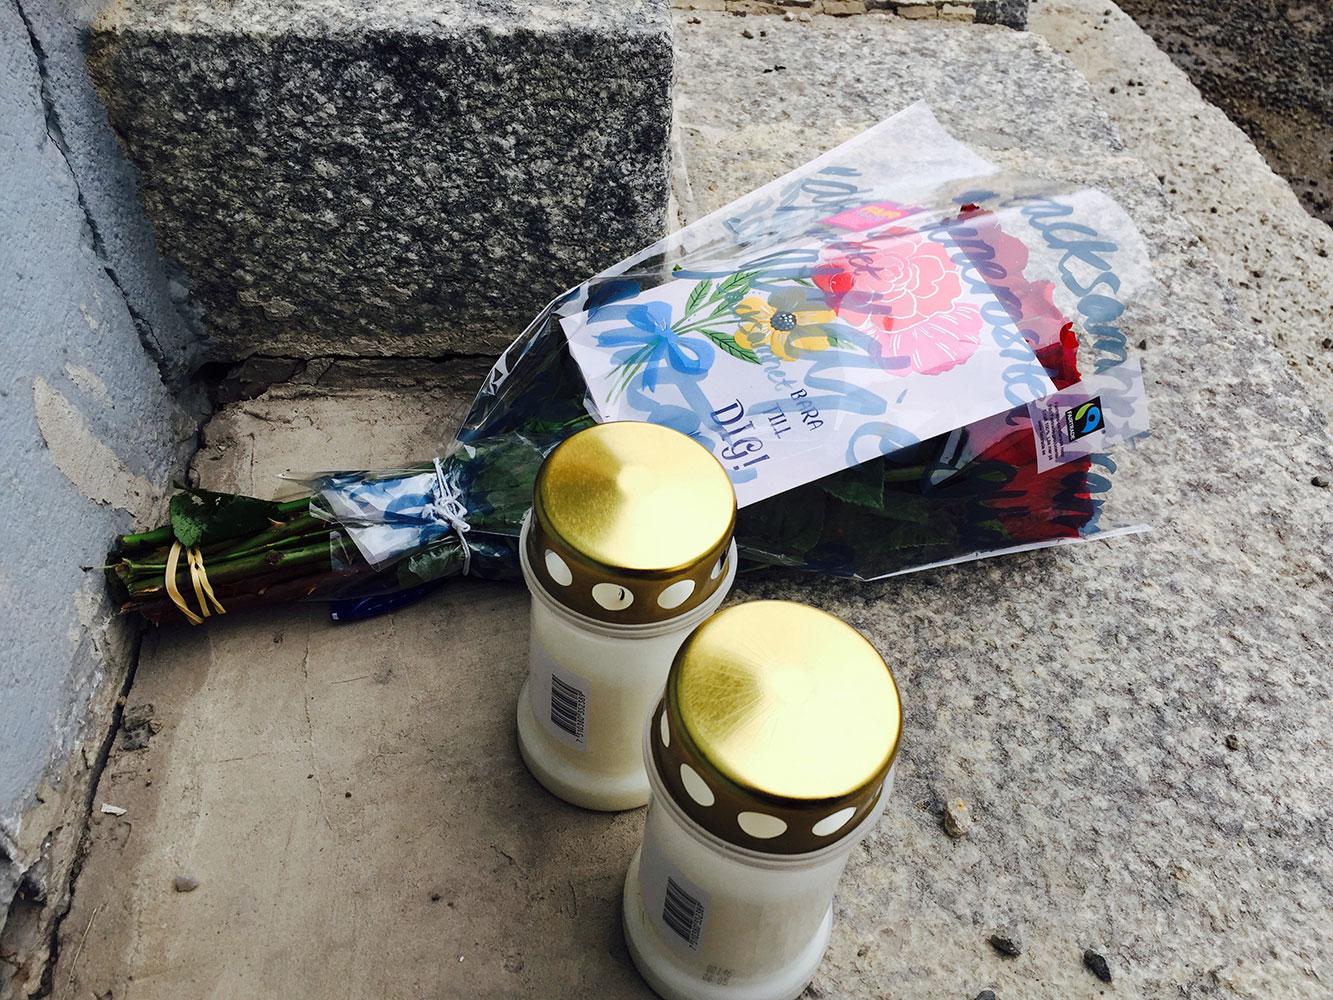 Blommor och ljus för att minnas och hedra offret.